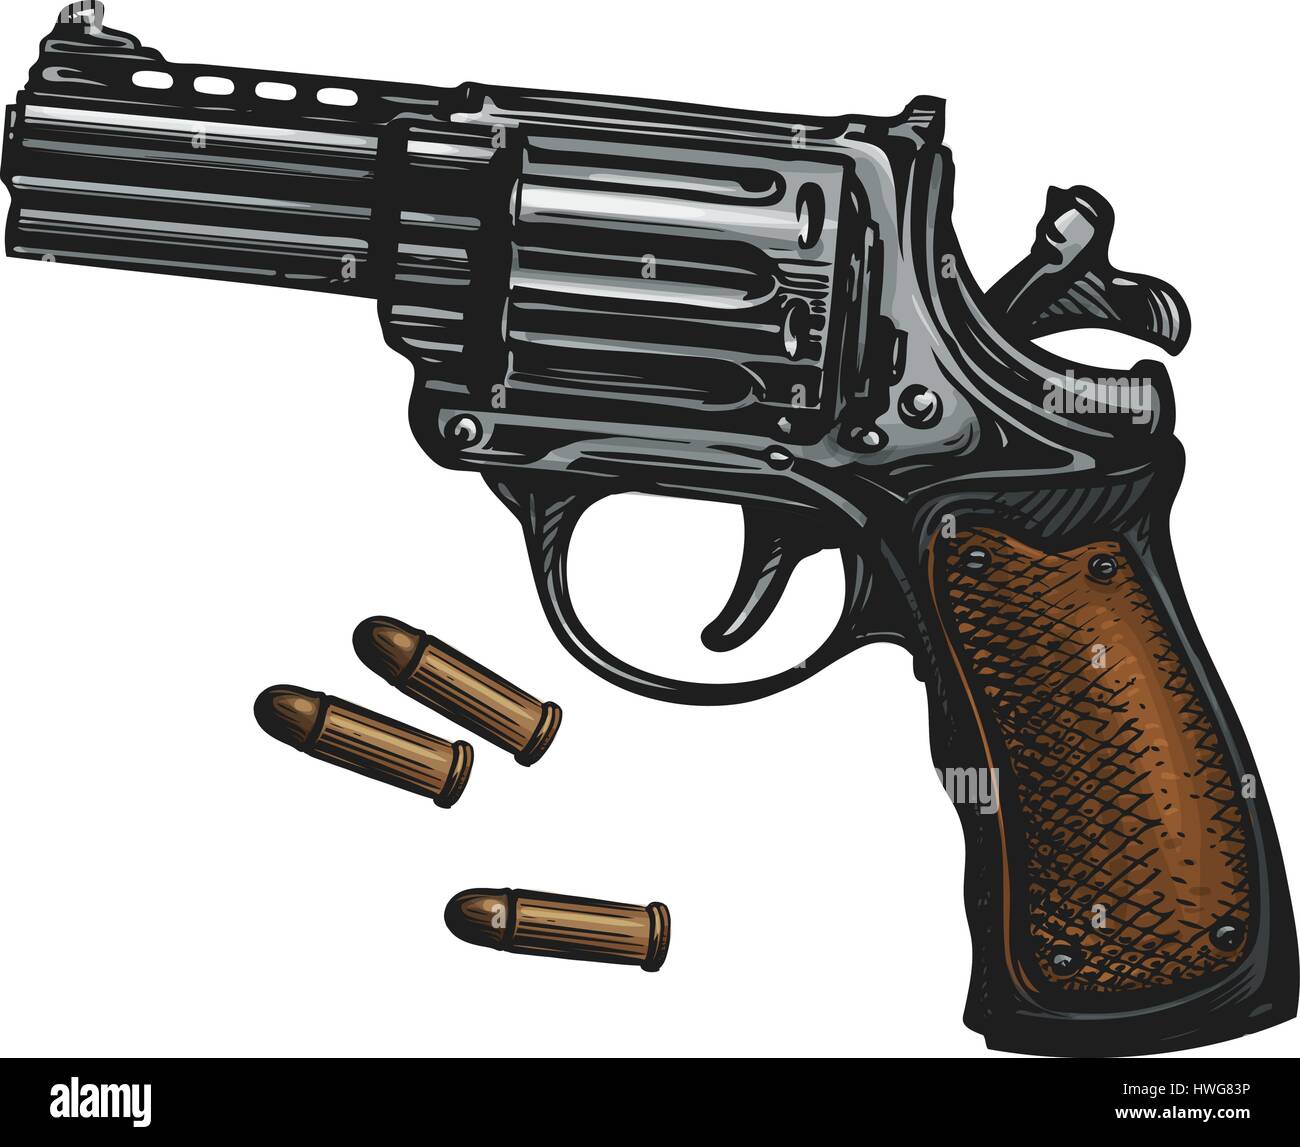 Pistola de pistolas, revólveres y munición, sketch. Vintage ilustración vectorial Ilustración del Vector